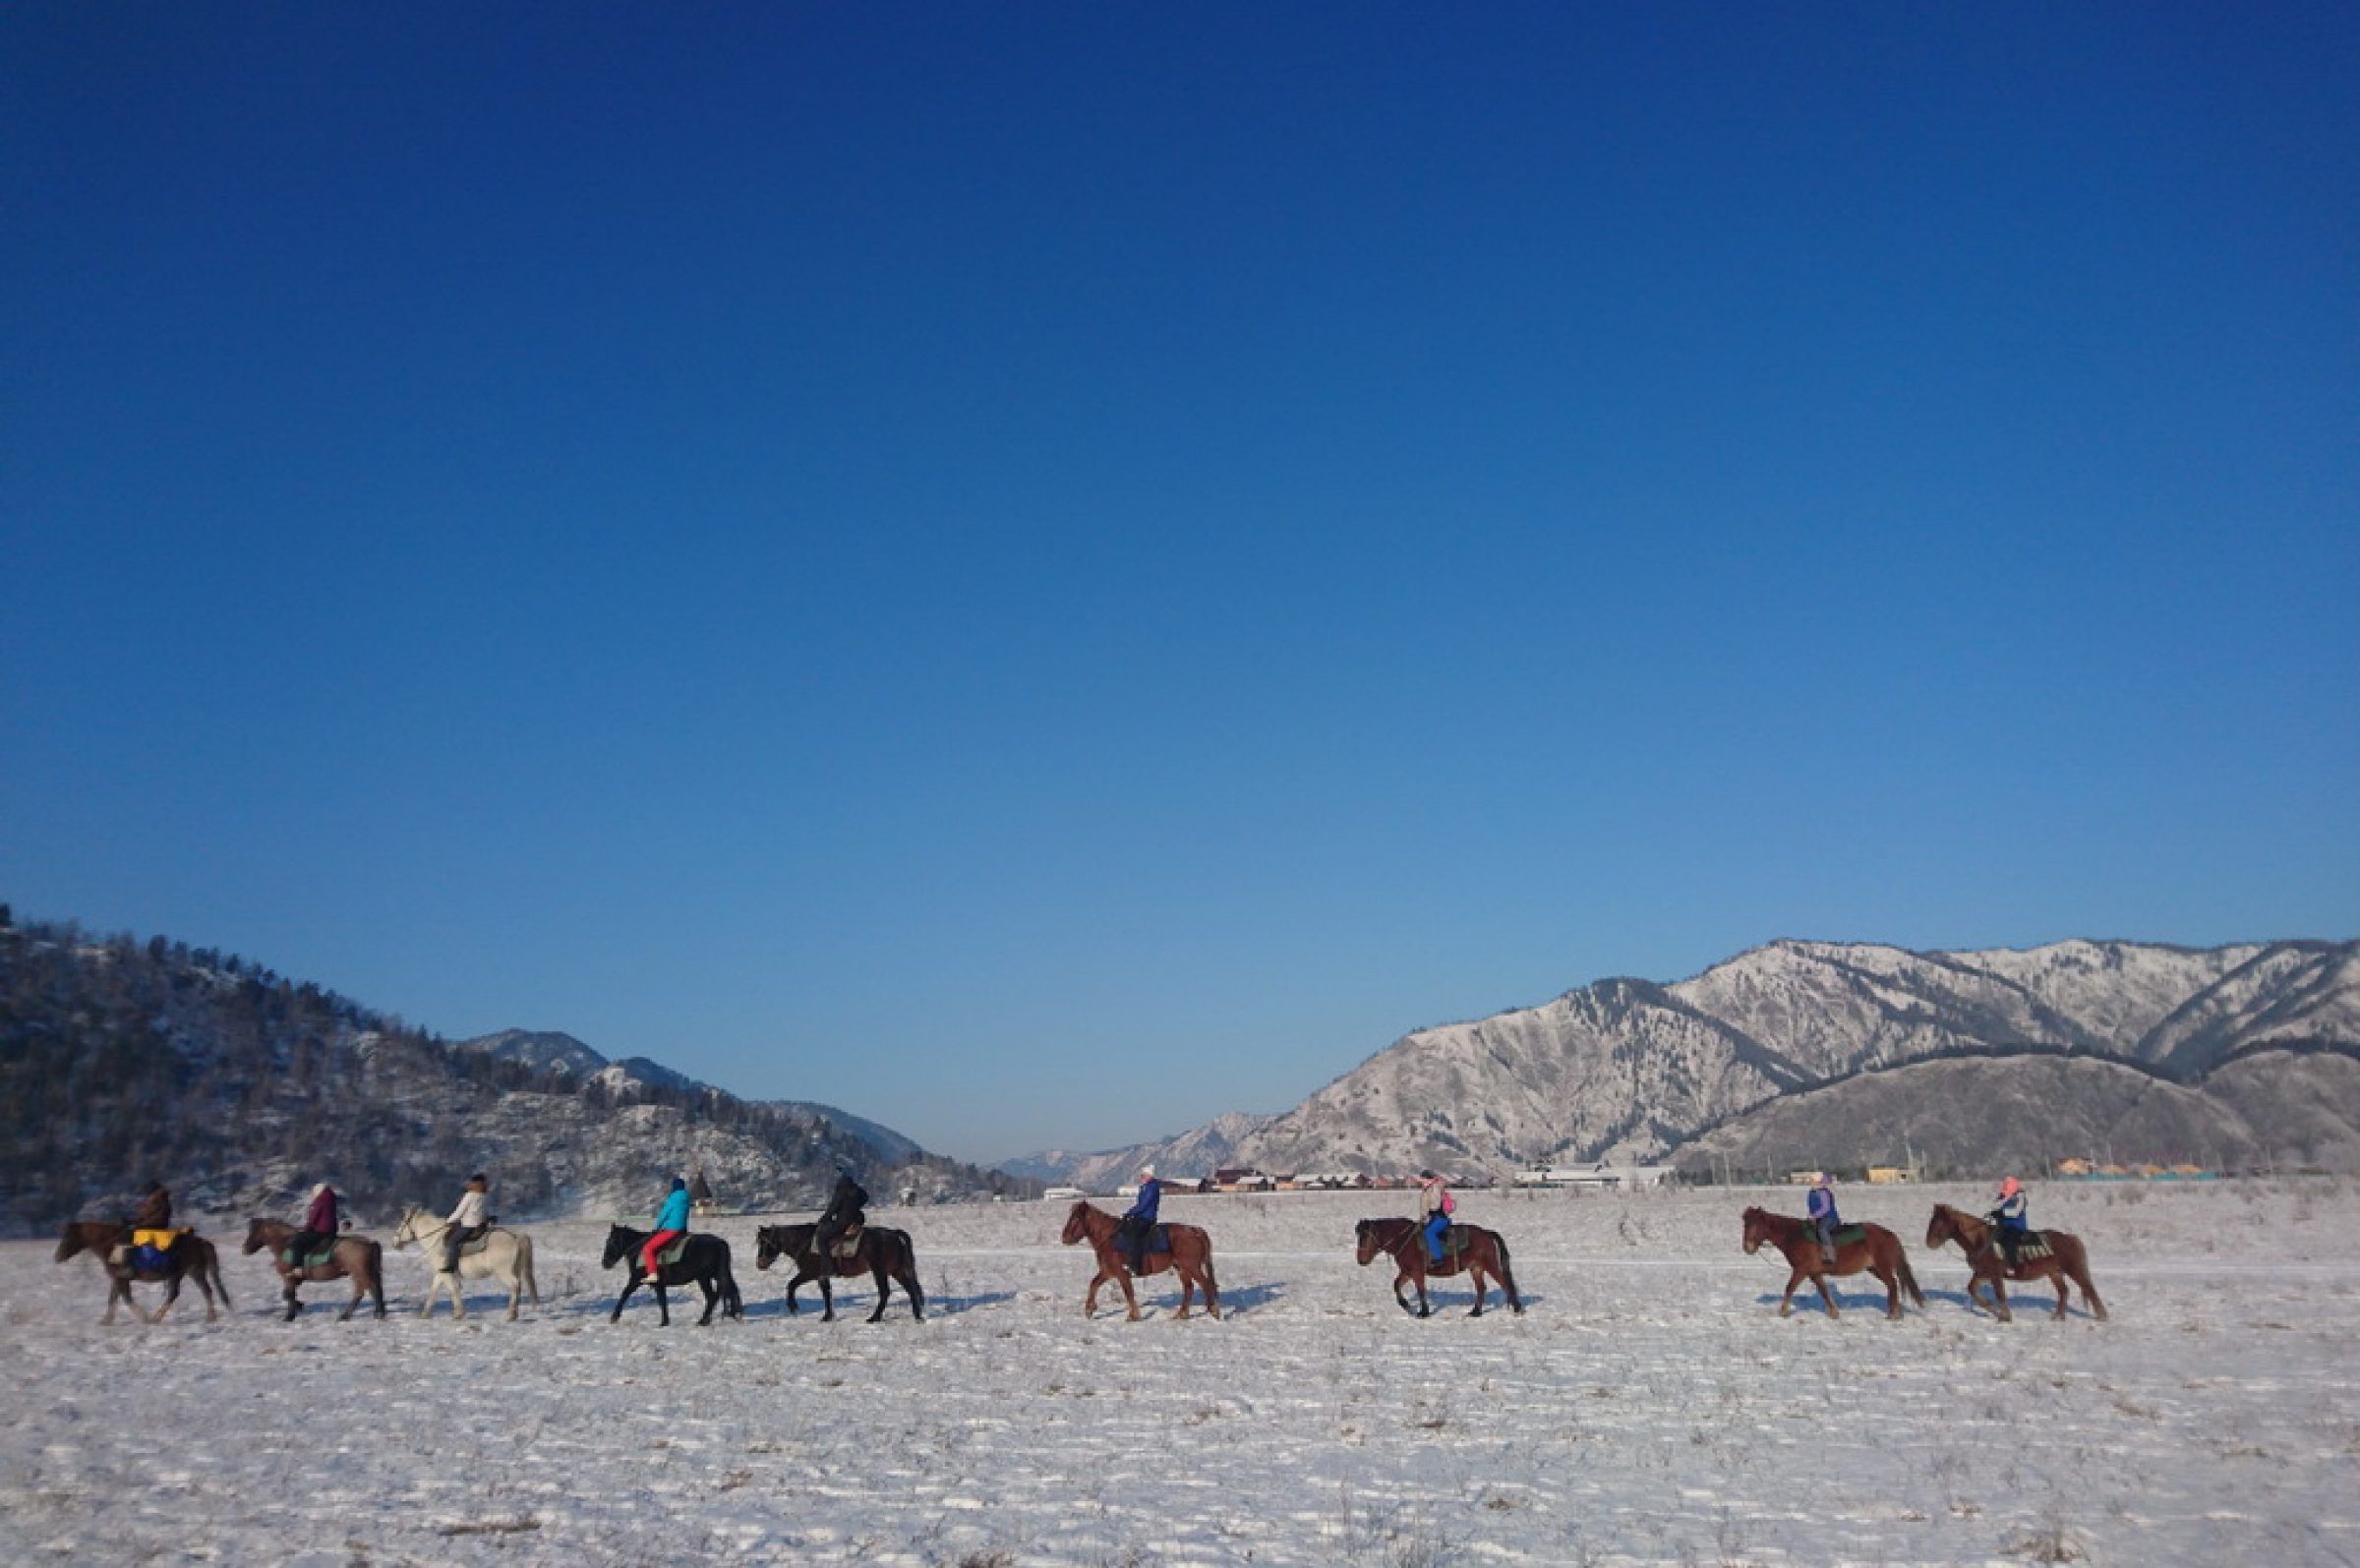 вереница лошадей голубое небо горы снег зима